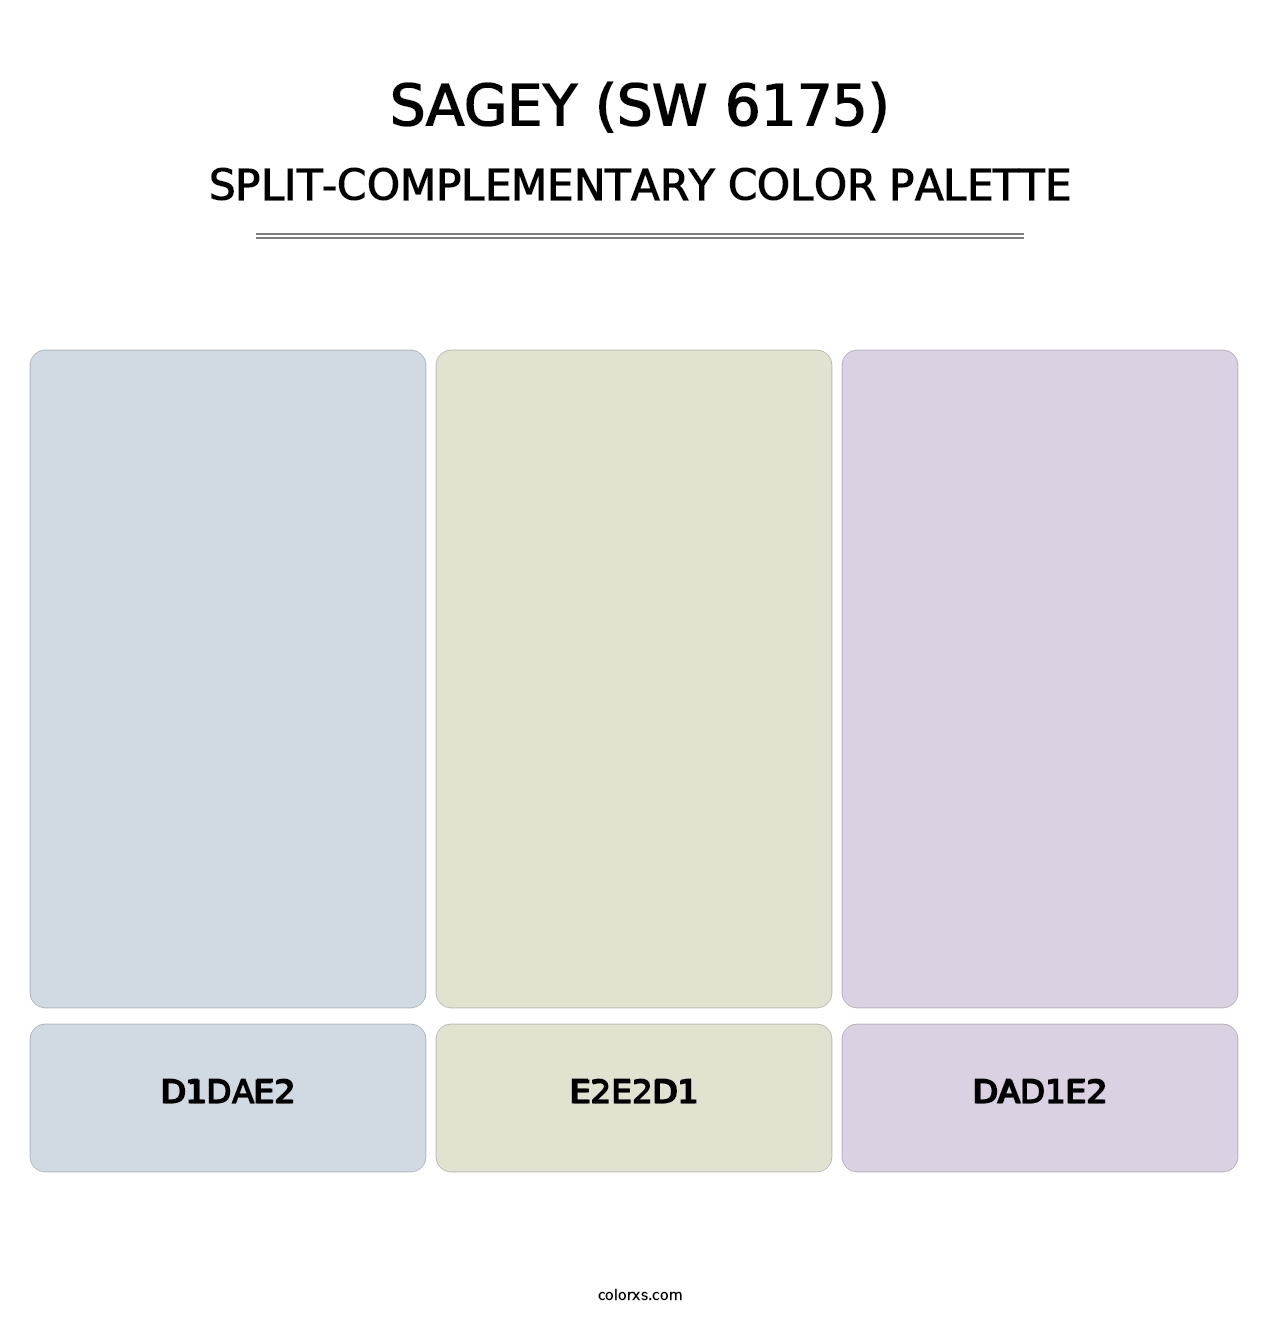 Sagey (SW 6175) - Split-Complementary Color Palette